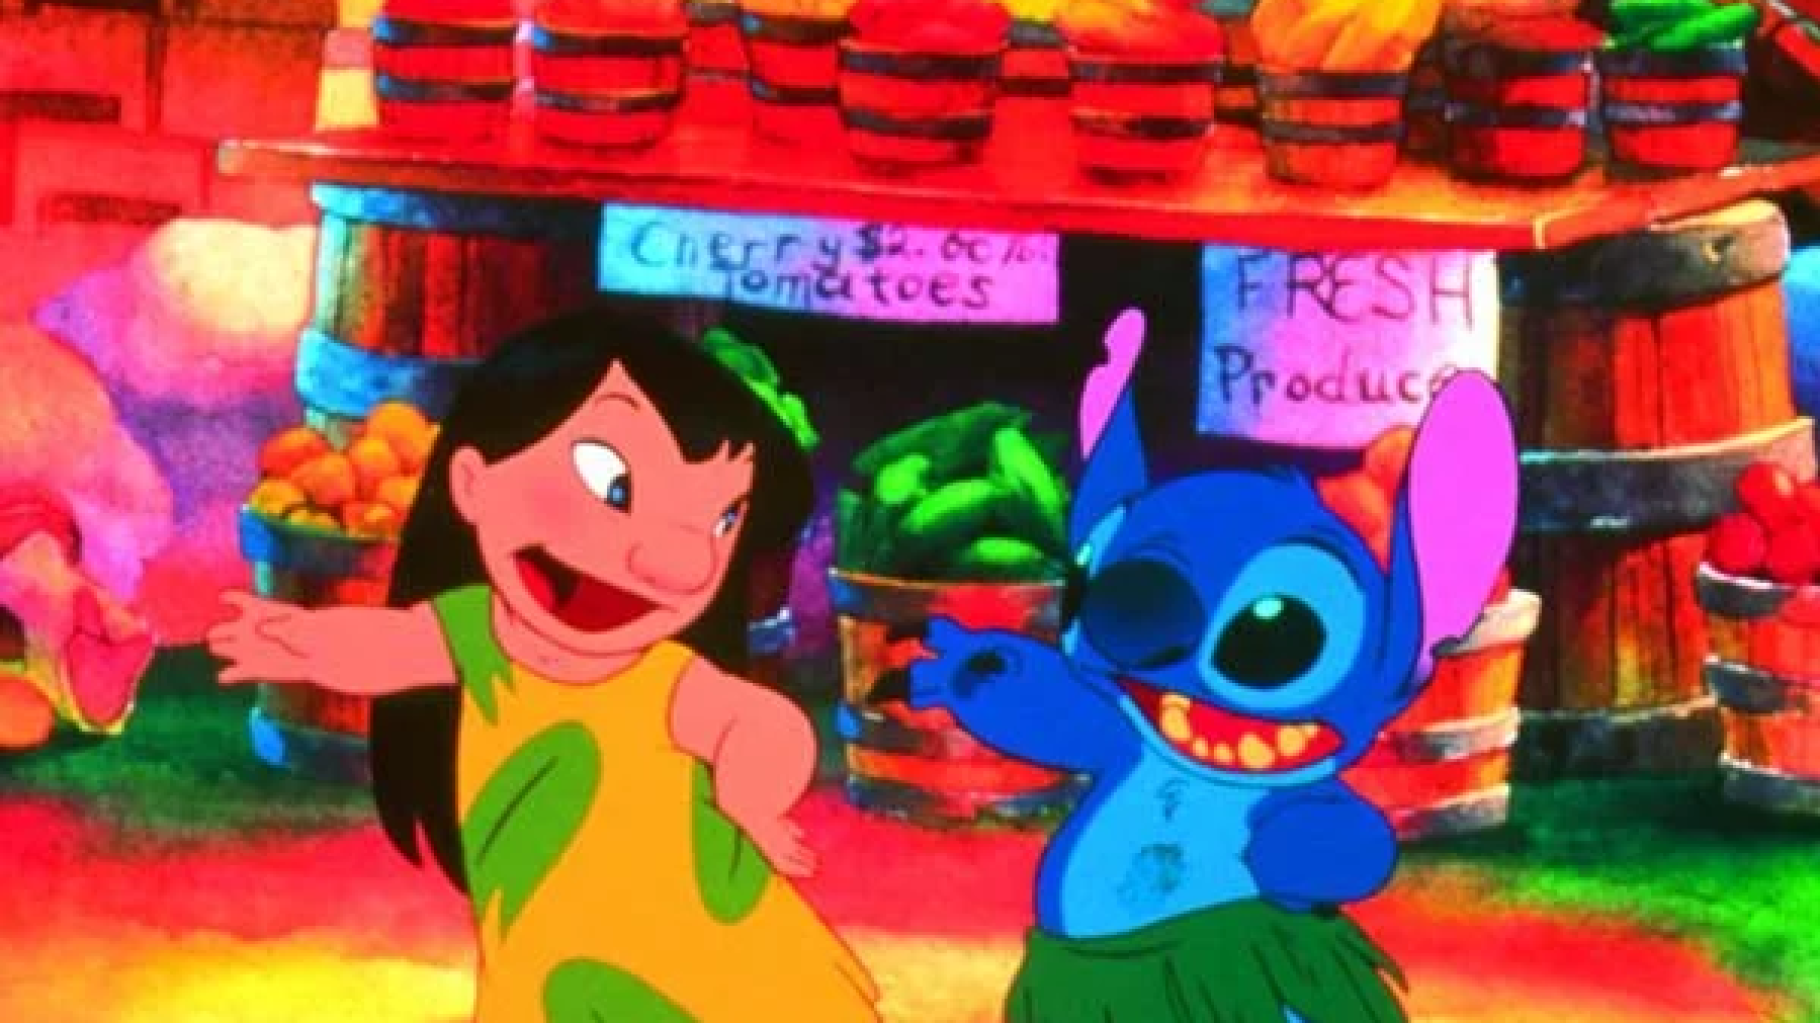 Le live-action de Disney sur « Lilo & Stitch » a trouvé son actrice principale